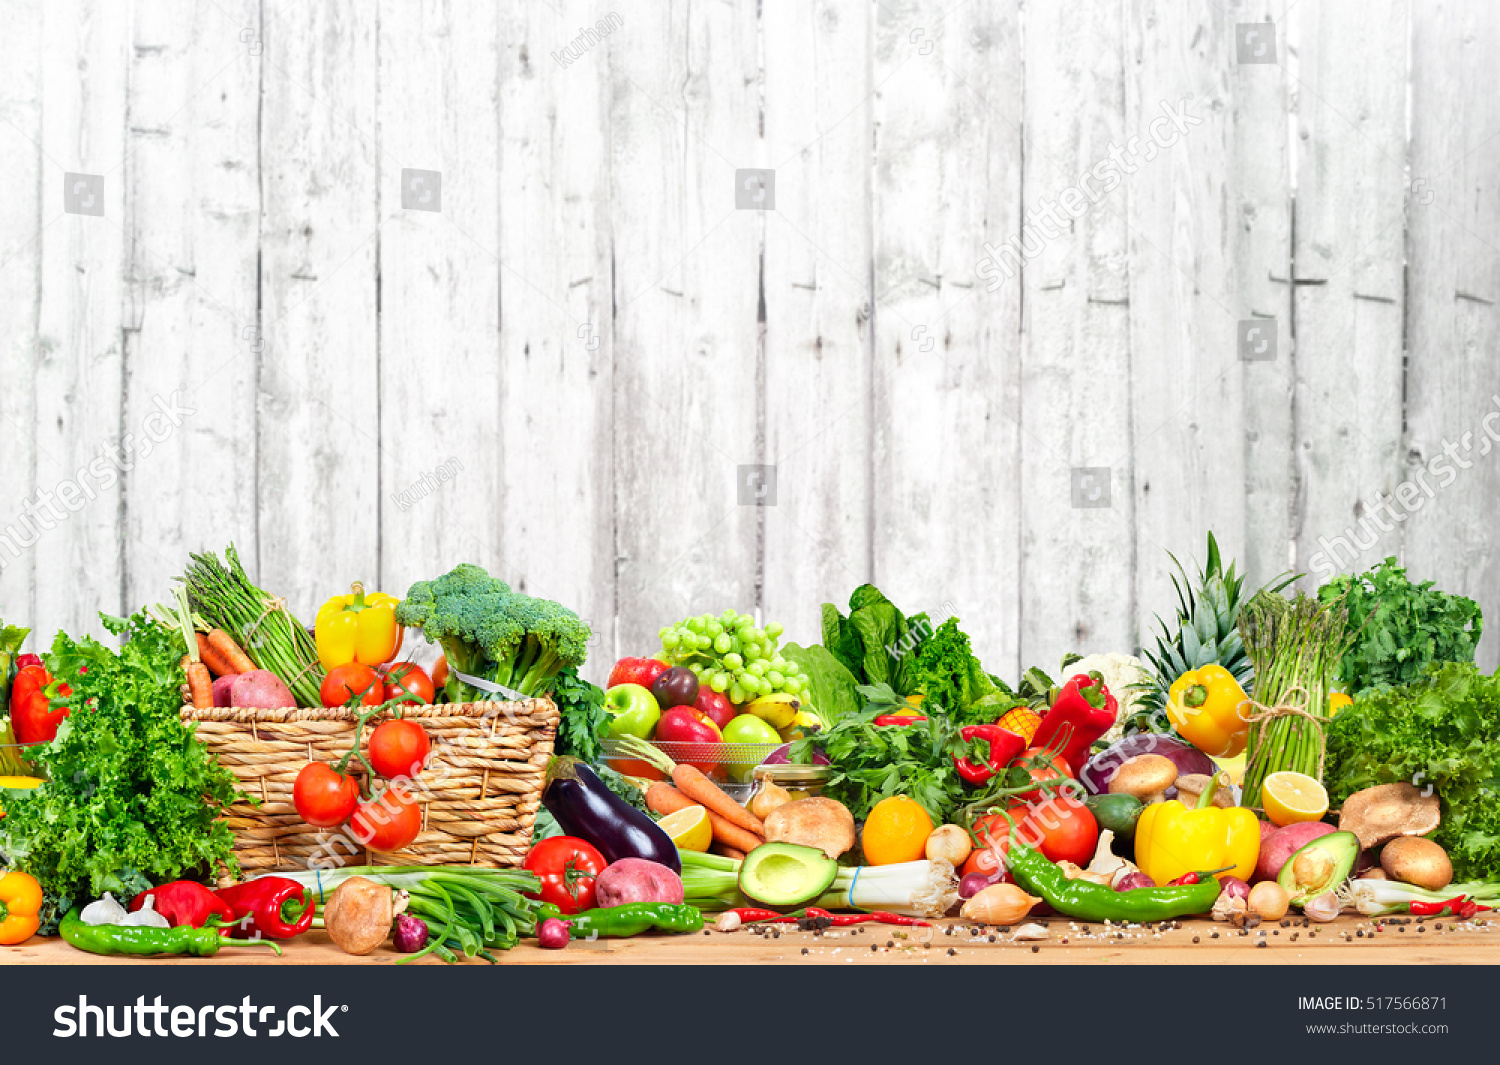 Баннер магазина овощей и фруктов